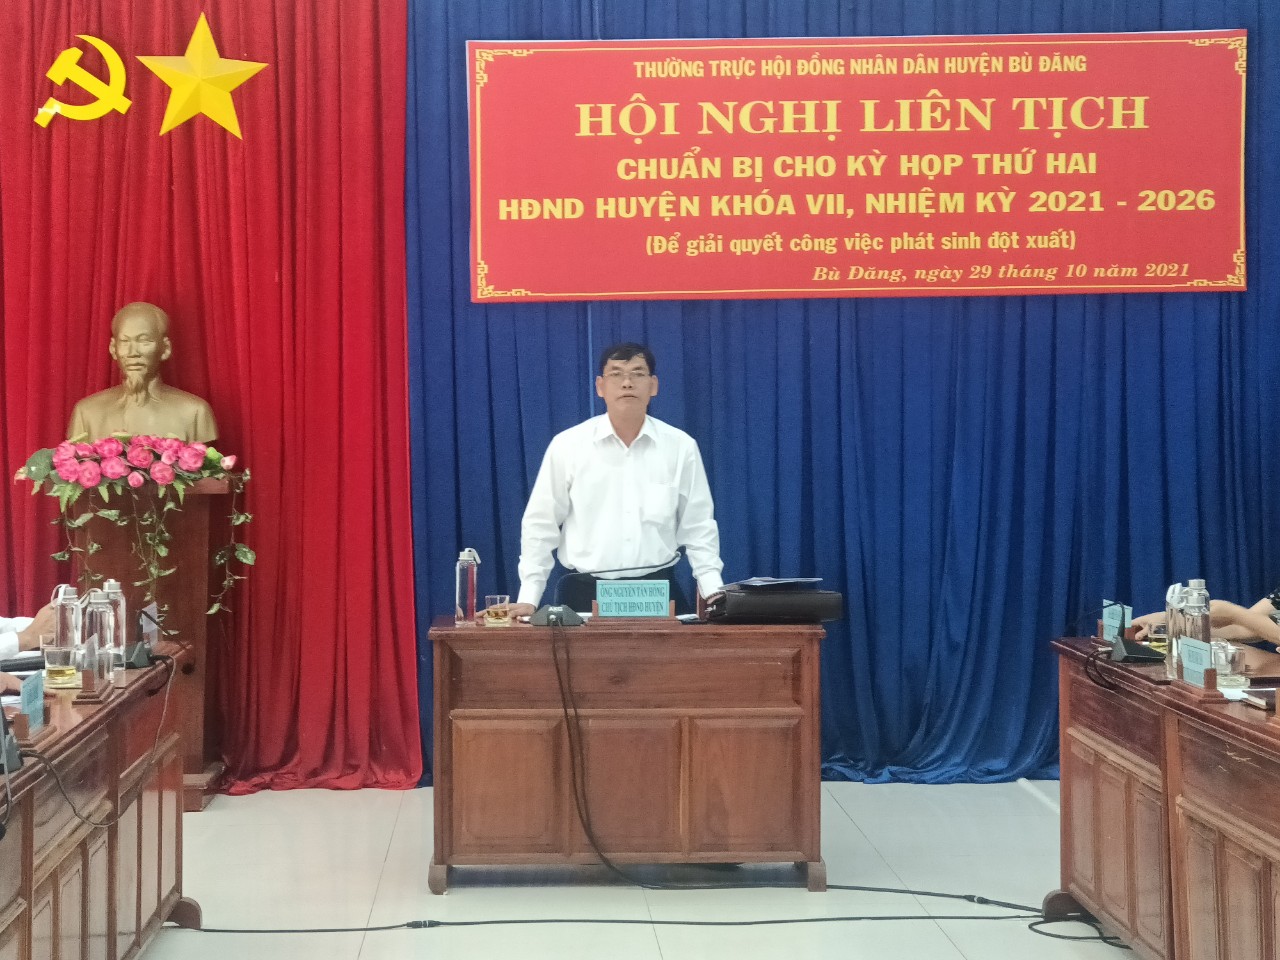 Phó Bí thư thường trực   Chủ tịch HĐND huyện Bù Đăng Nguyễn Tấn Hồng kết luận Hội nghị 2